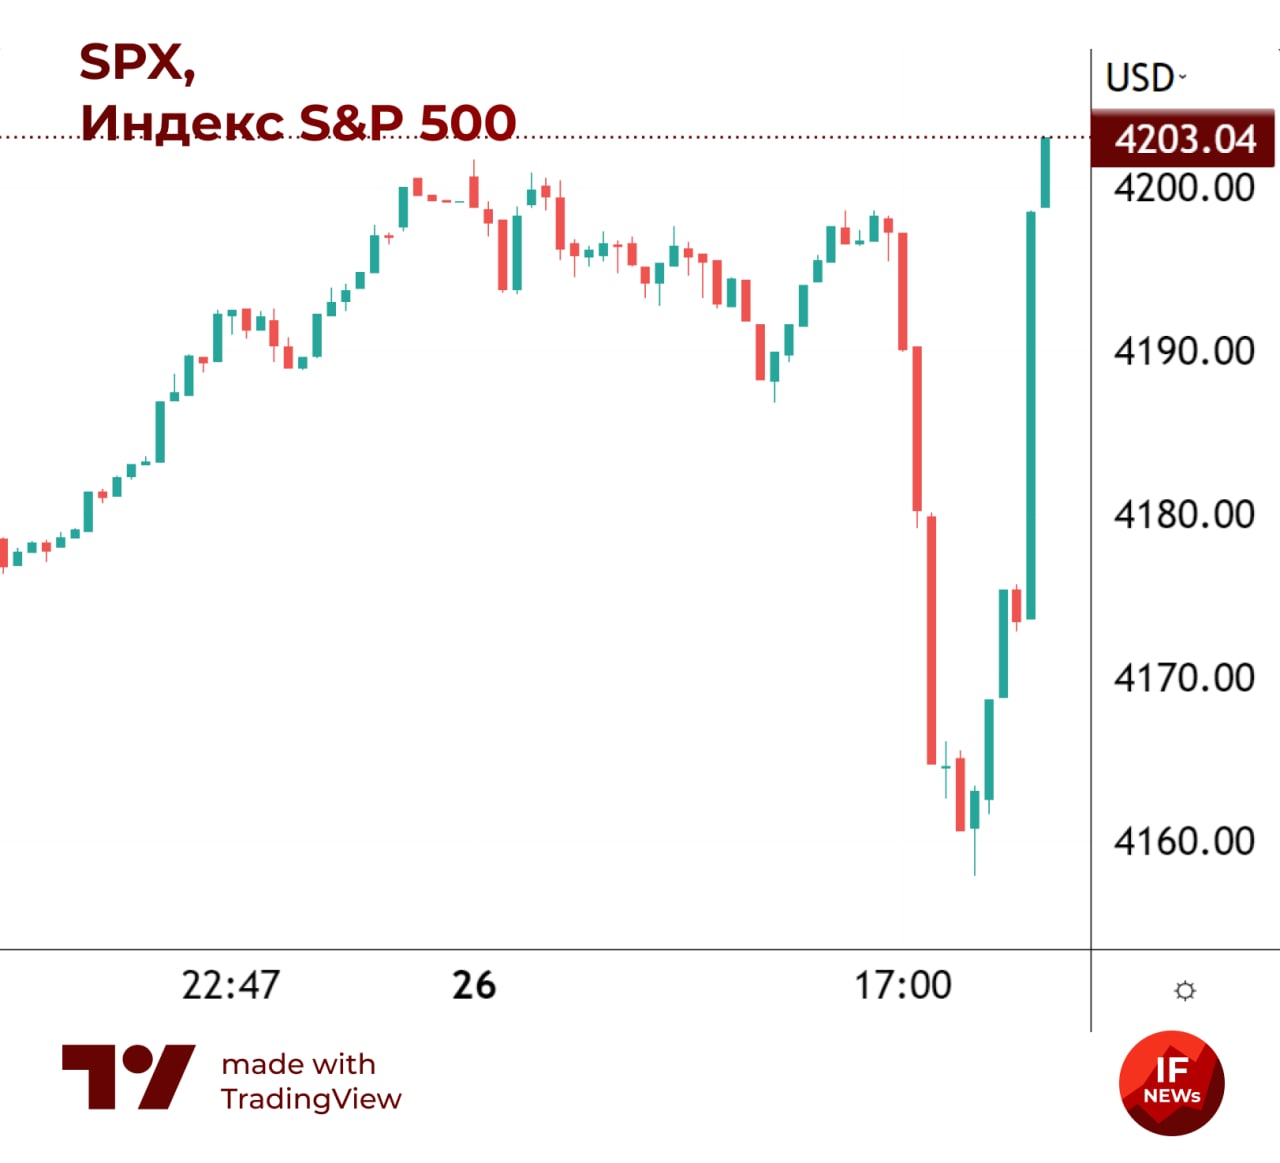 Реакция рынка на речь Пауэлла. S&P 500 за 10 минут успел потерять и отыграть 1%